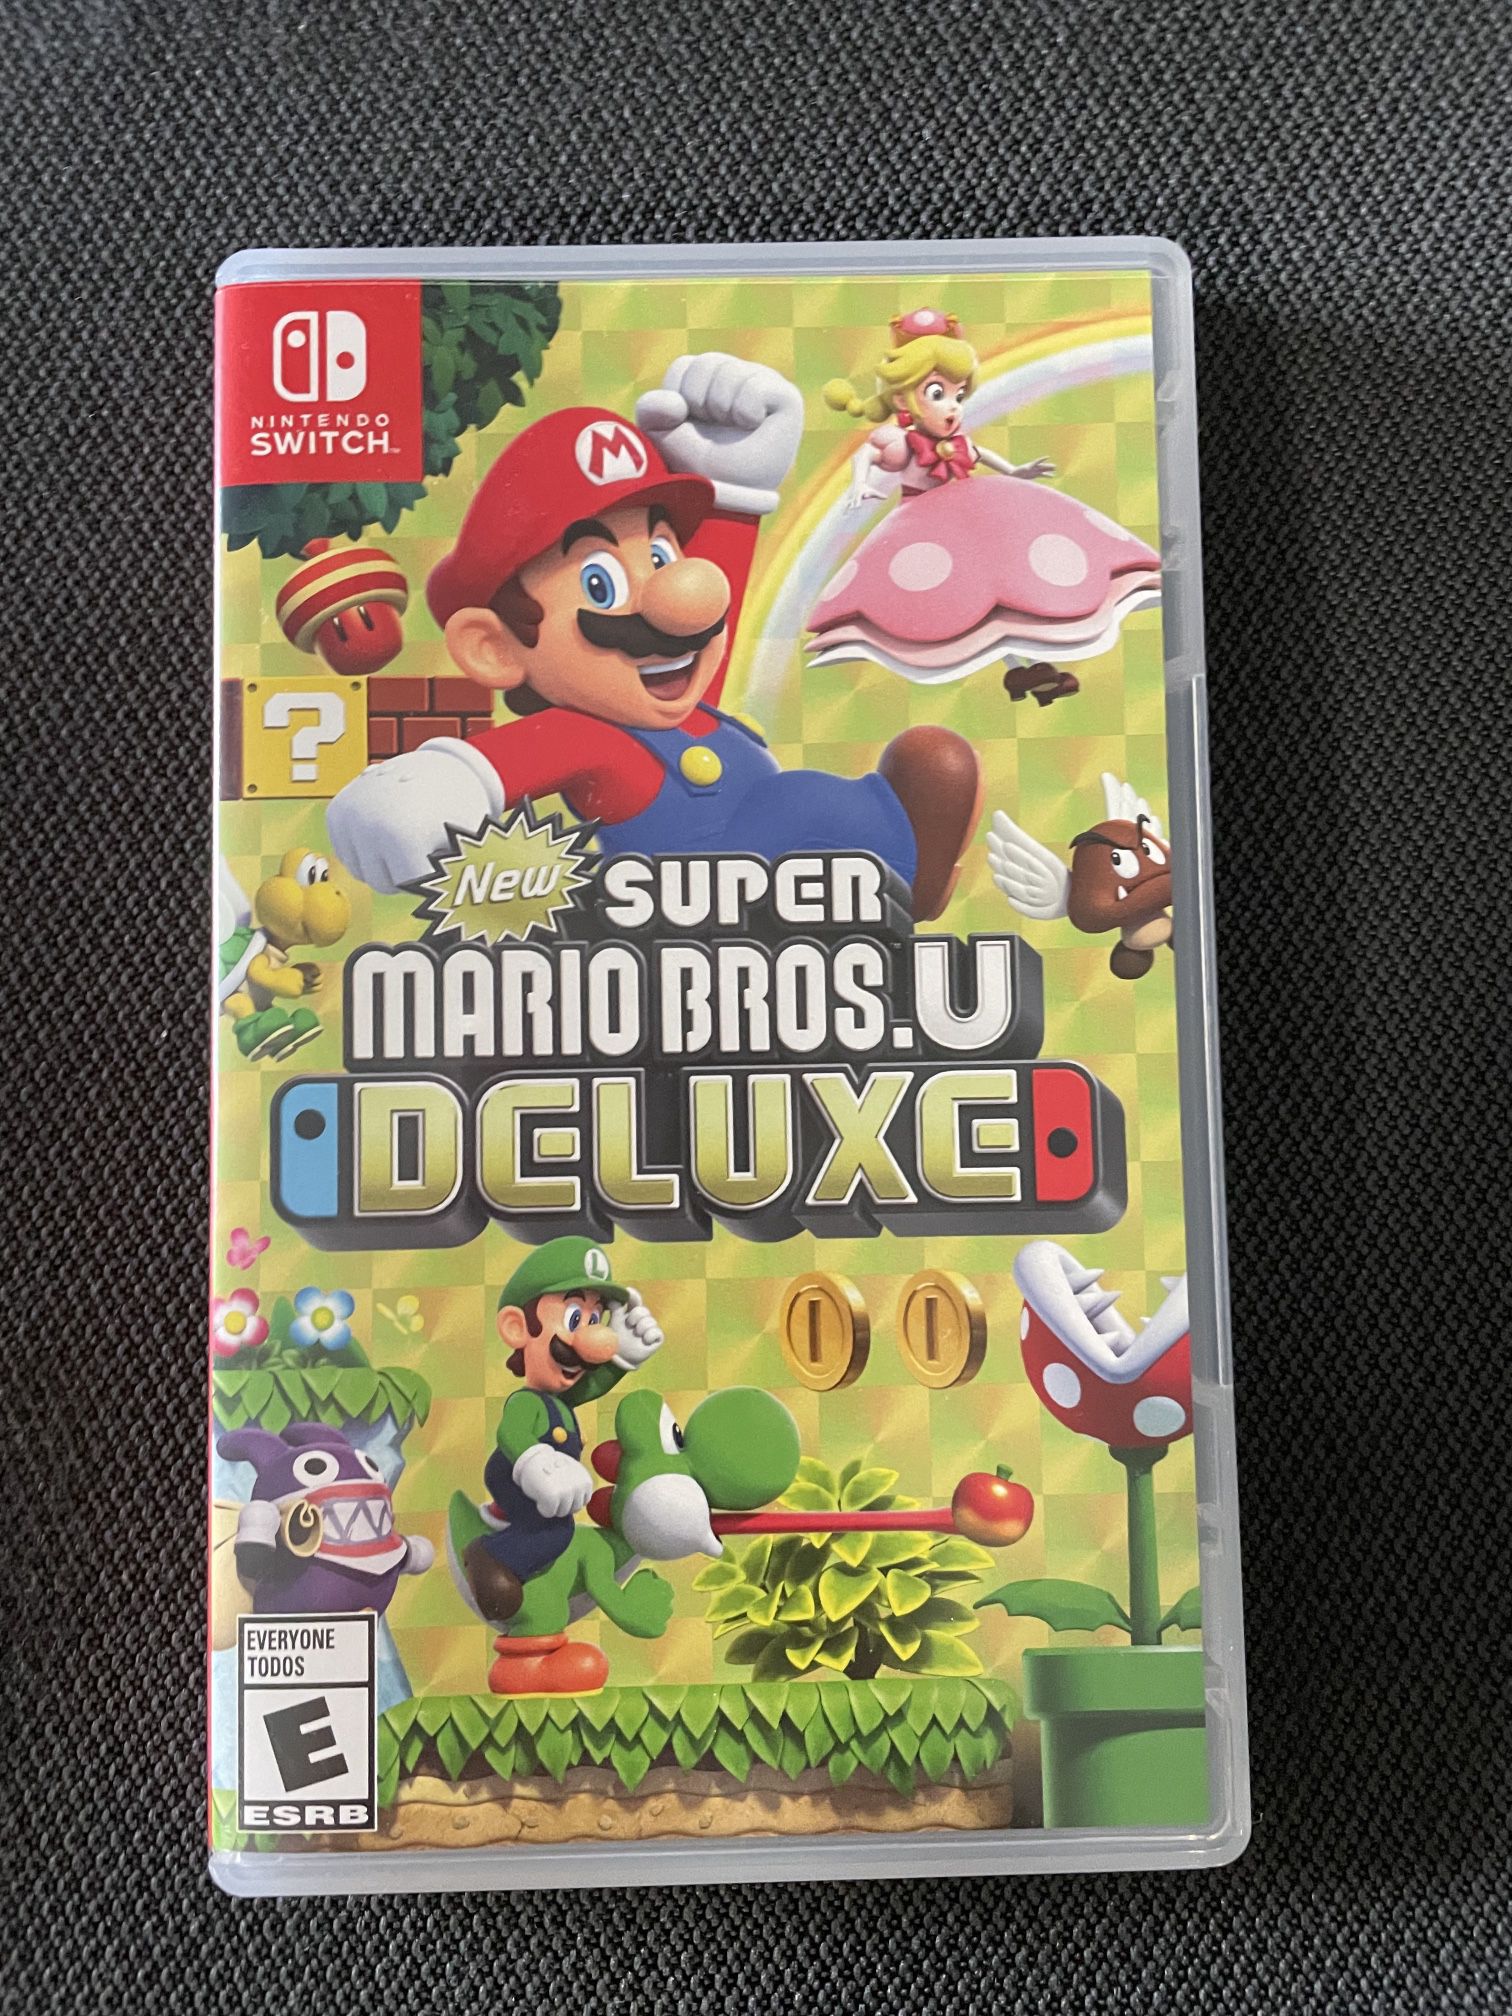 Super Mario Bros U Deluxe. Nintendo Switch. Used, Still Pristine.